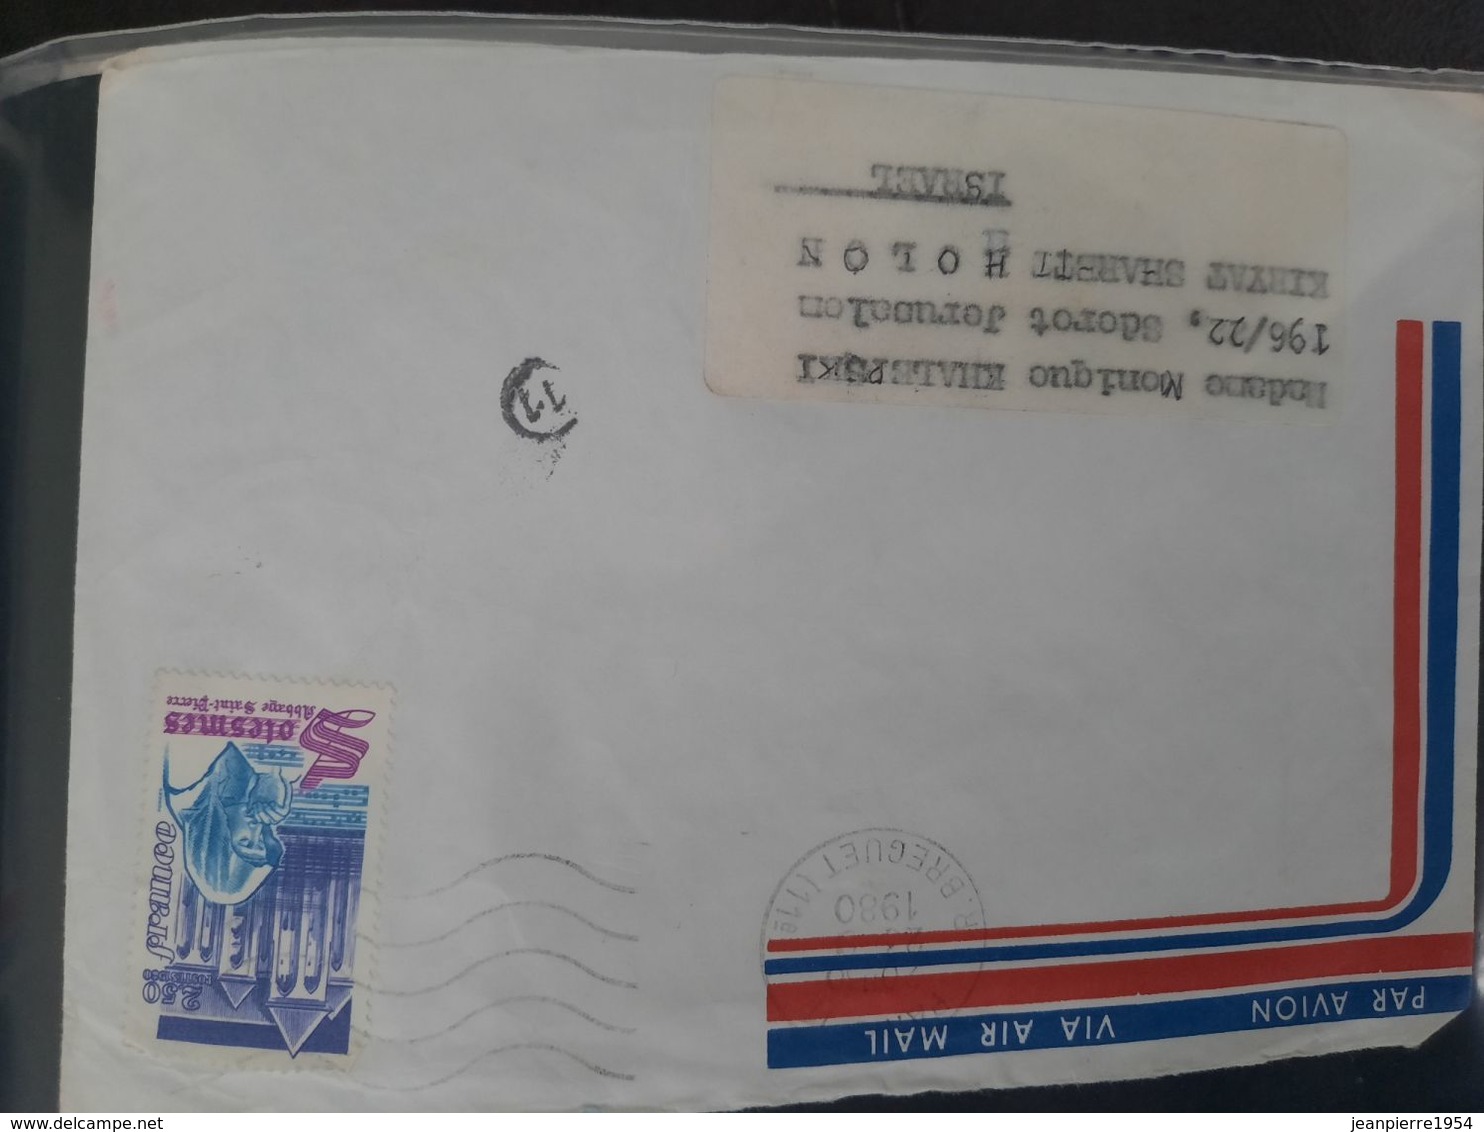 notice premier jour des timbres poste